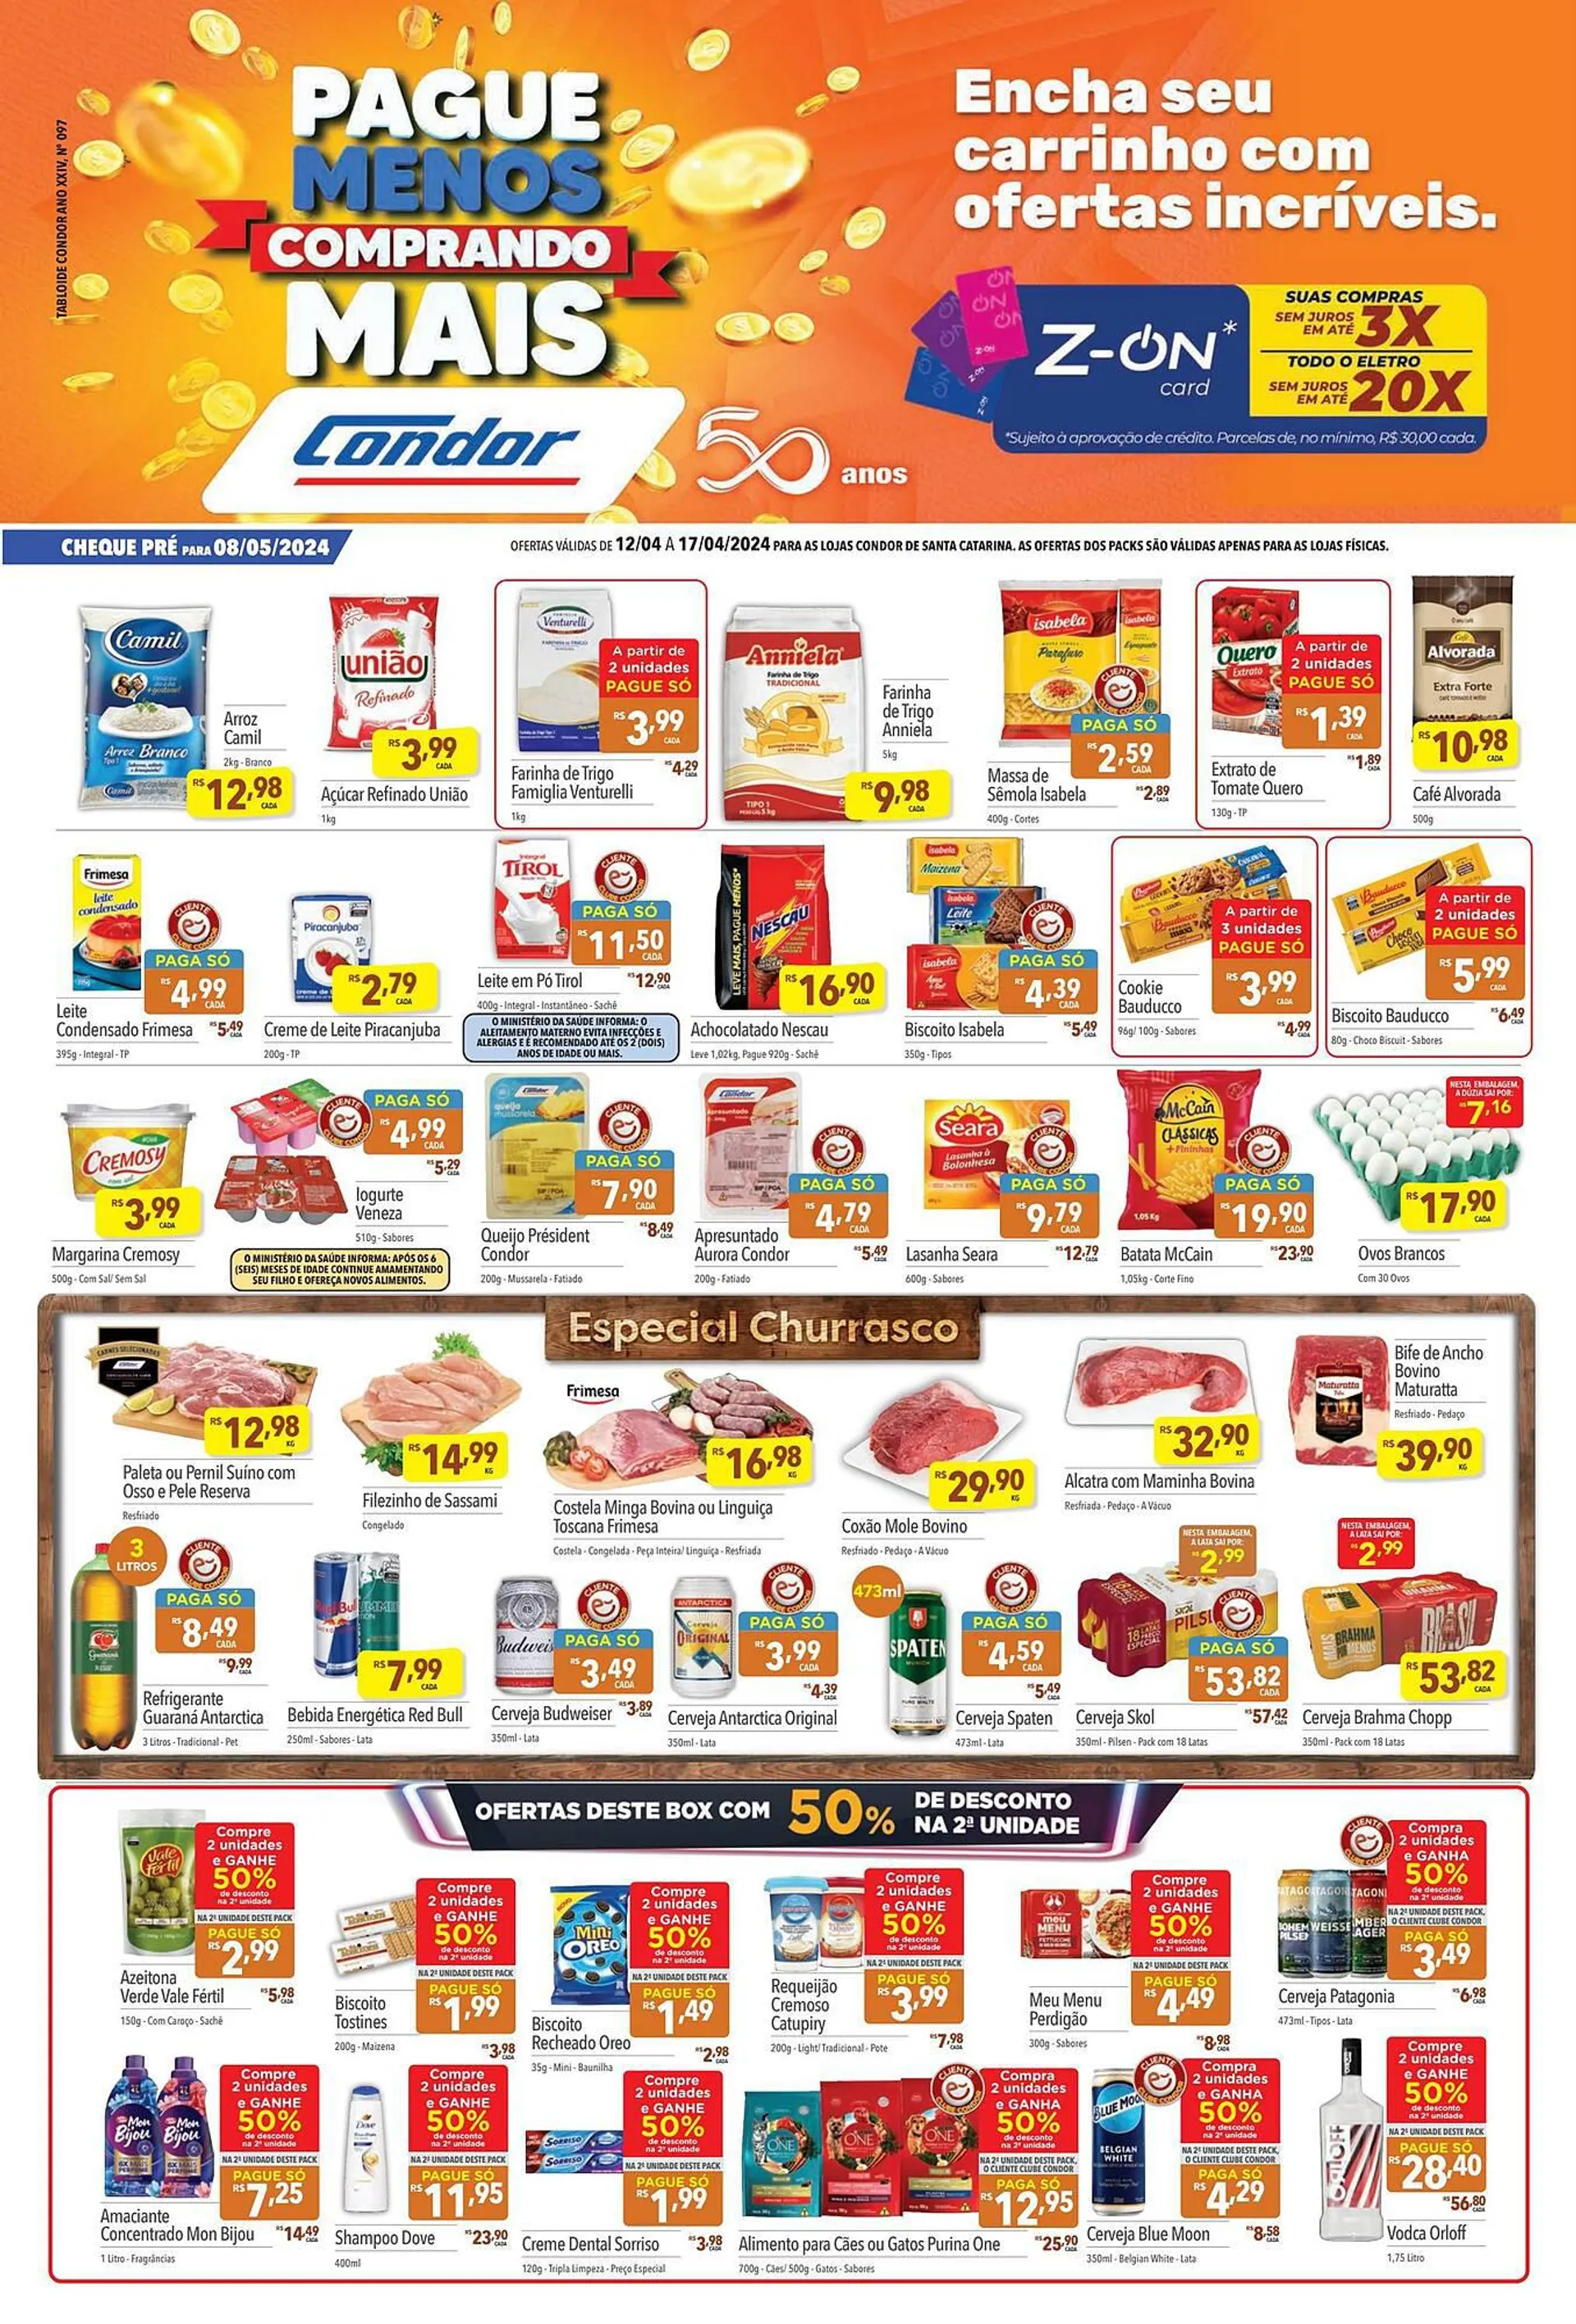 Encarte de Catálogo Supermercados Condor 12 de abril até 17 de abril 2024 - Pagina 